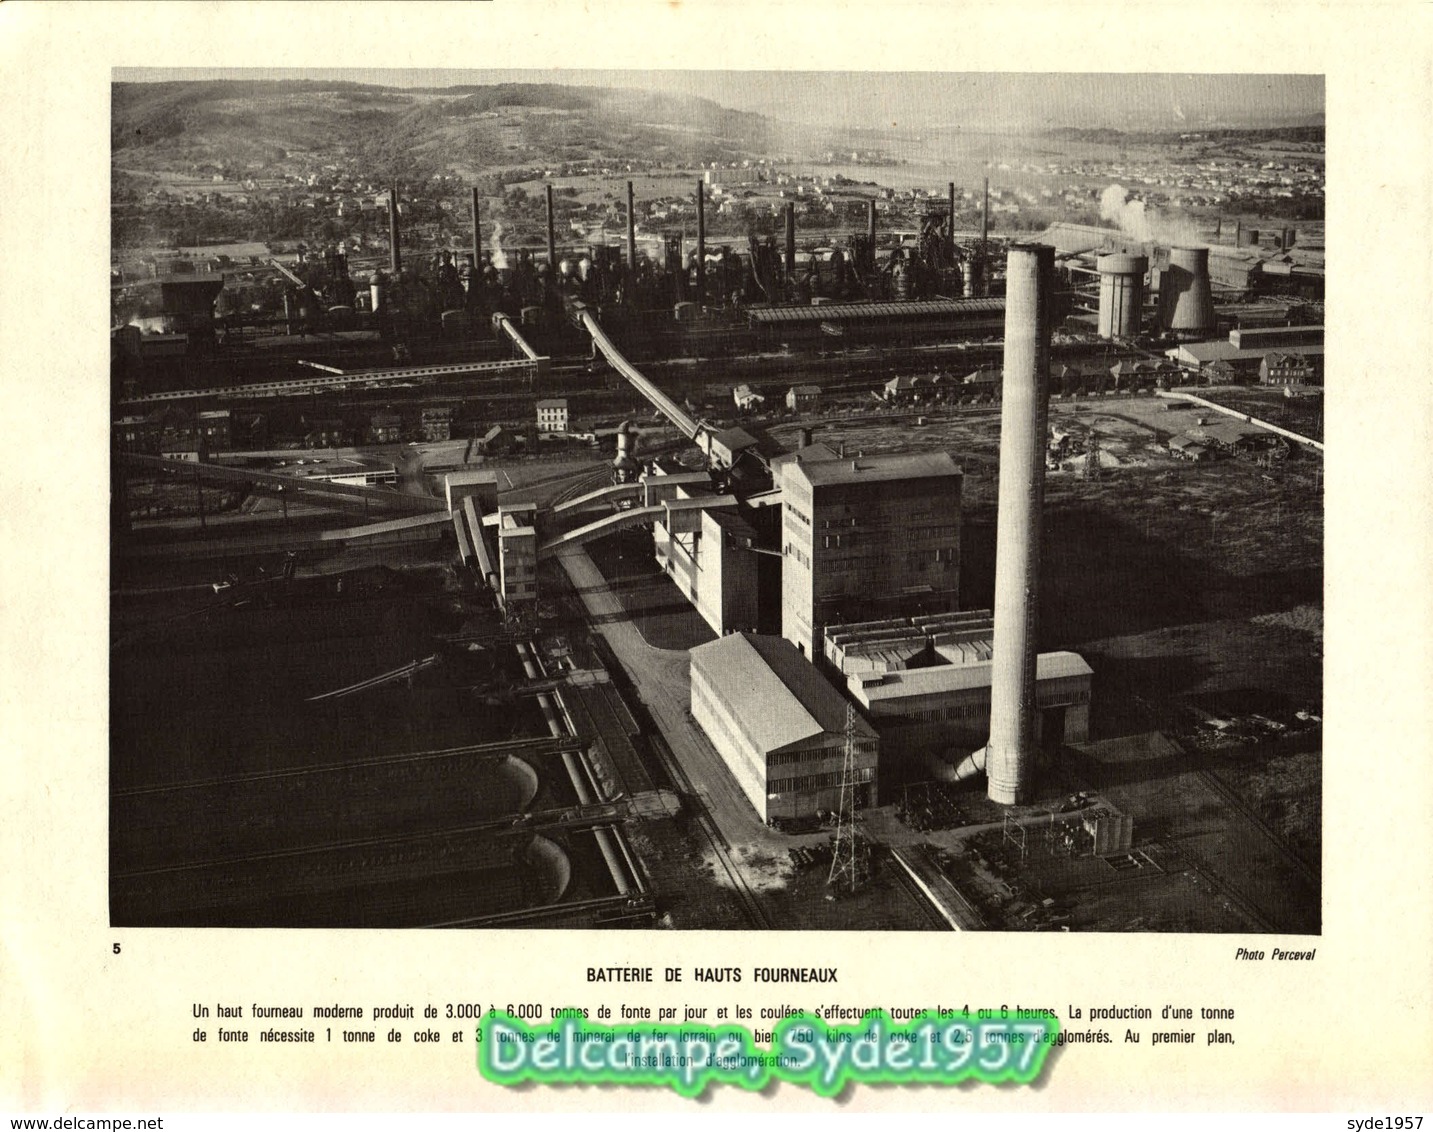 La Fonte et l'acier- 36 planches illustrées - Chambre Syndicale de la sidérurgie Française